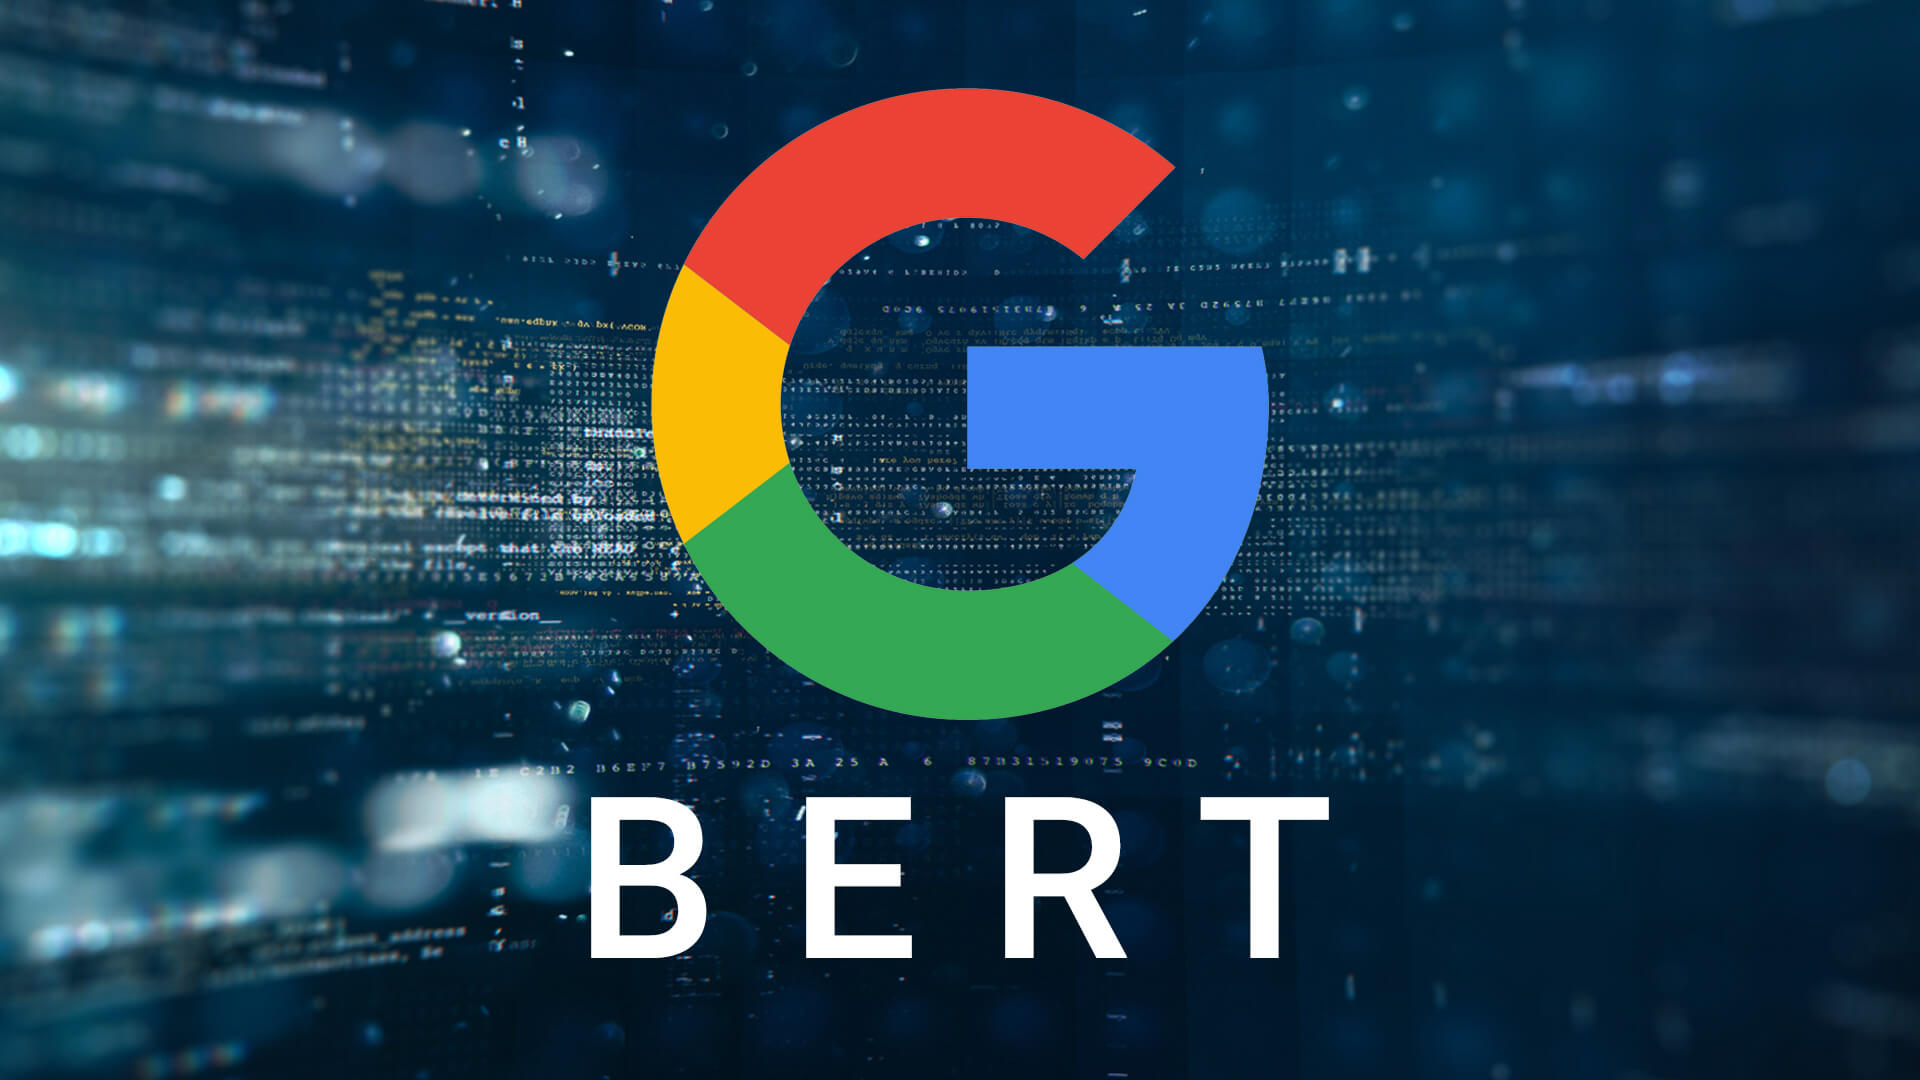 Google stellt neuen Suchalgorithmus vor, Bert